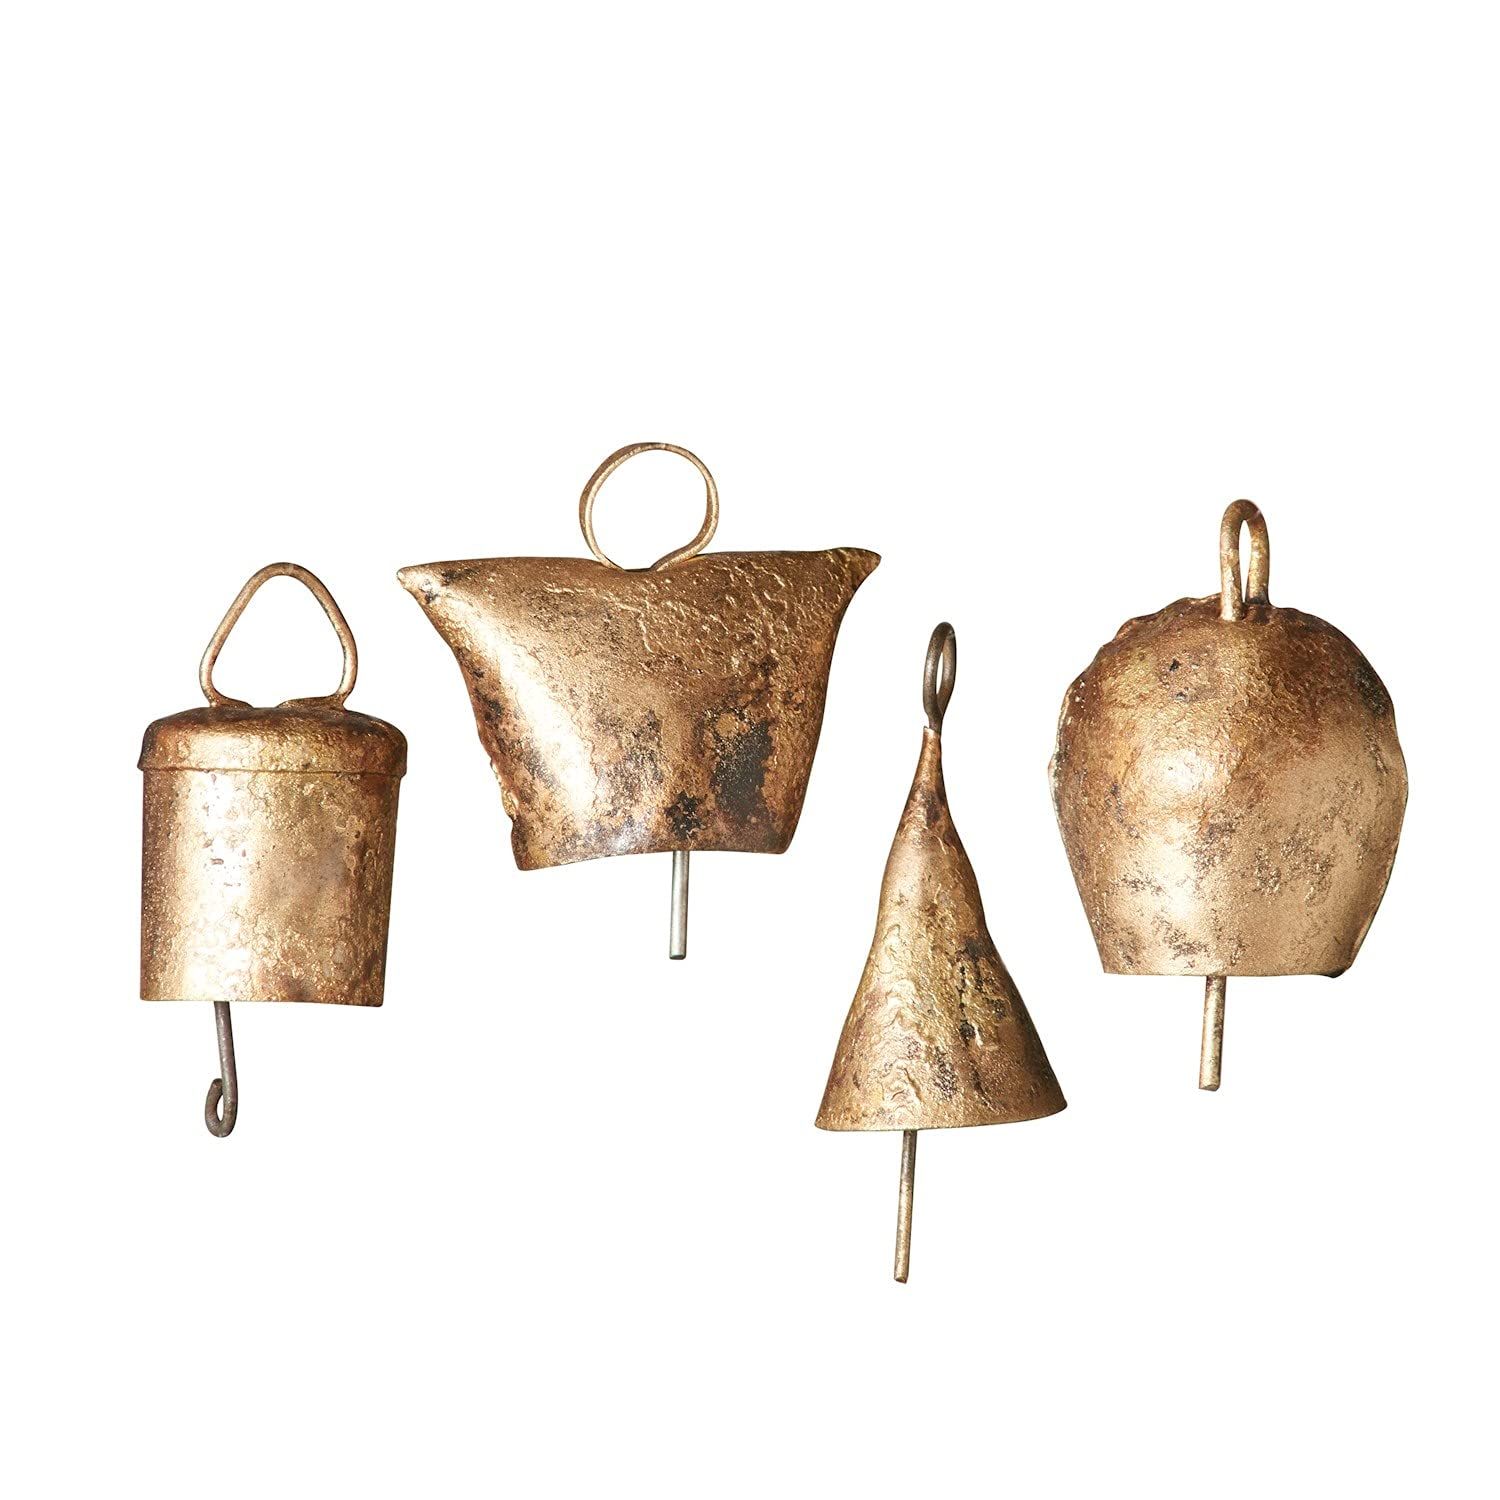 ART & ARTIFACT Noah Bells Set of 20 Hand Made Harmony Bells Temple Bells in Burlap Bag, 1 1/2" | Amazon (US)